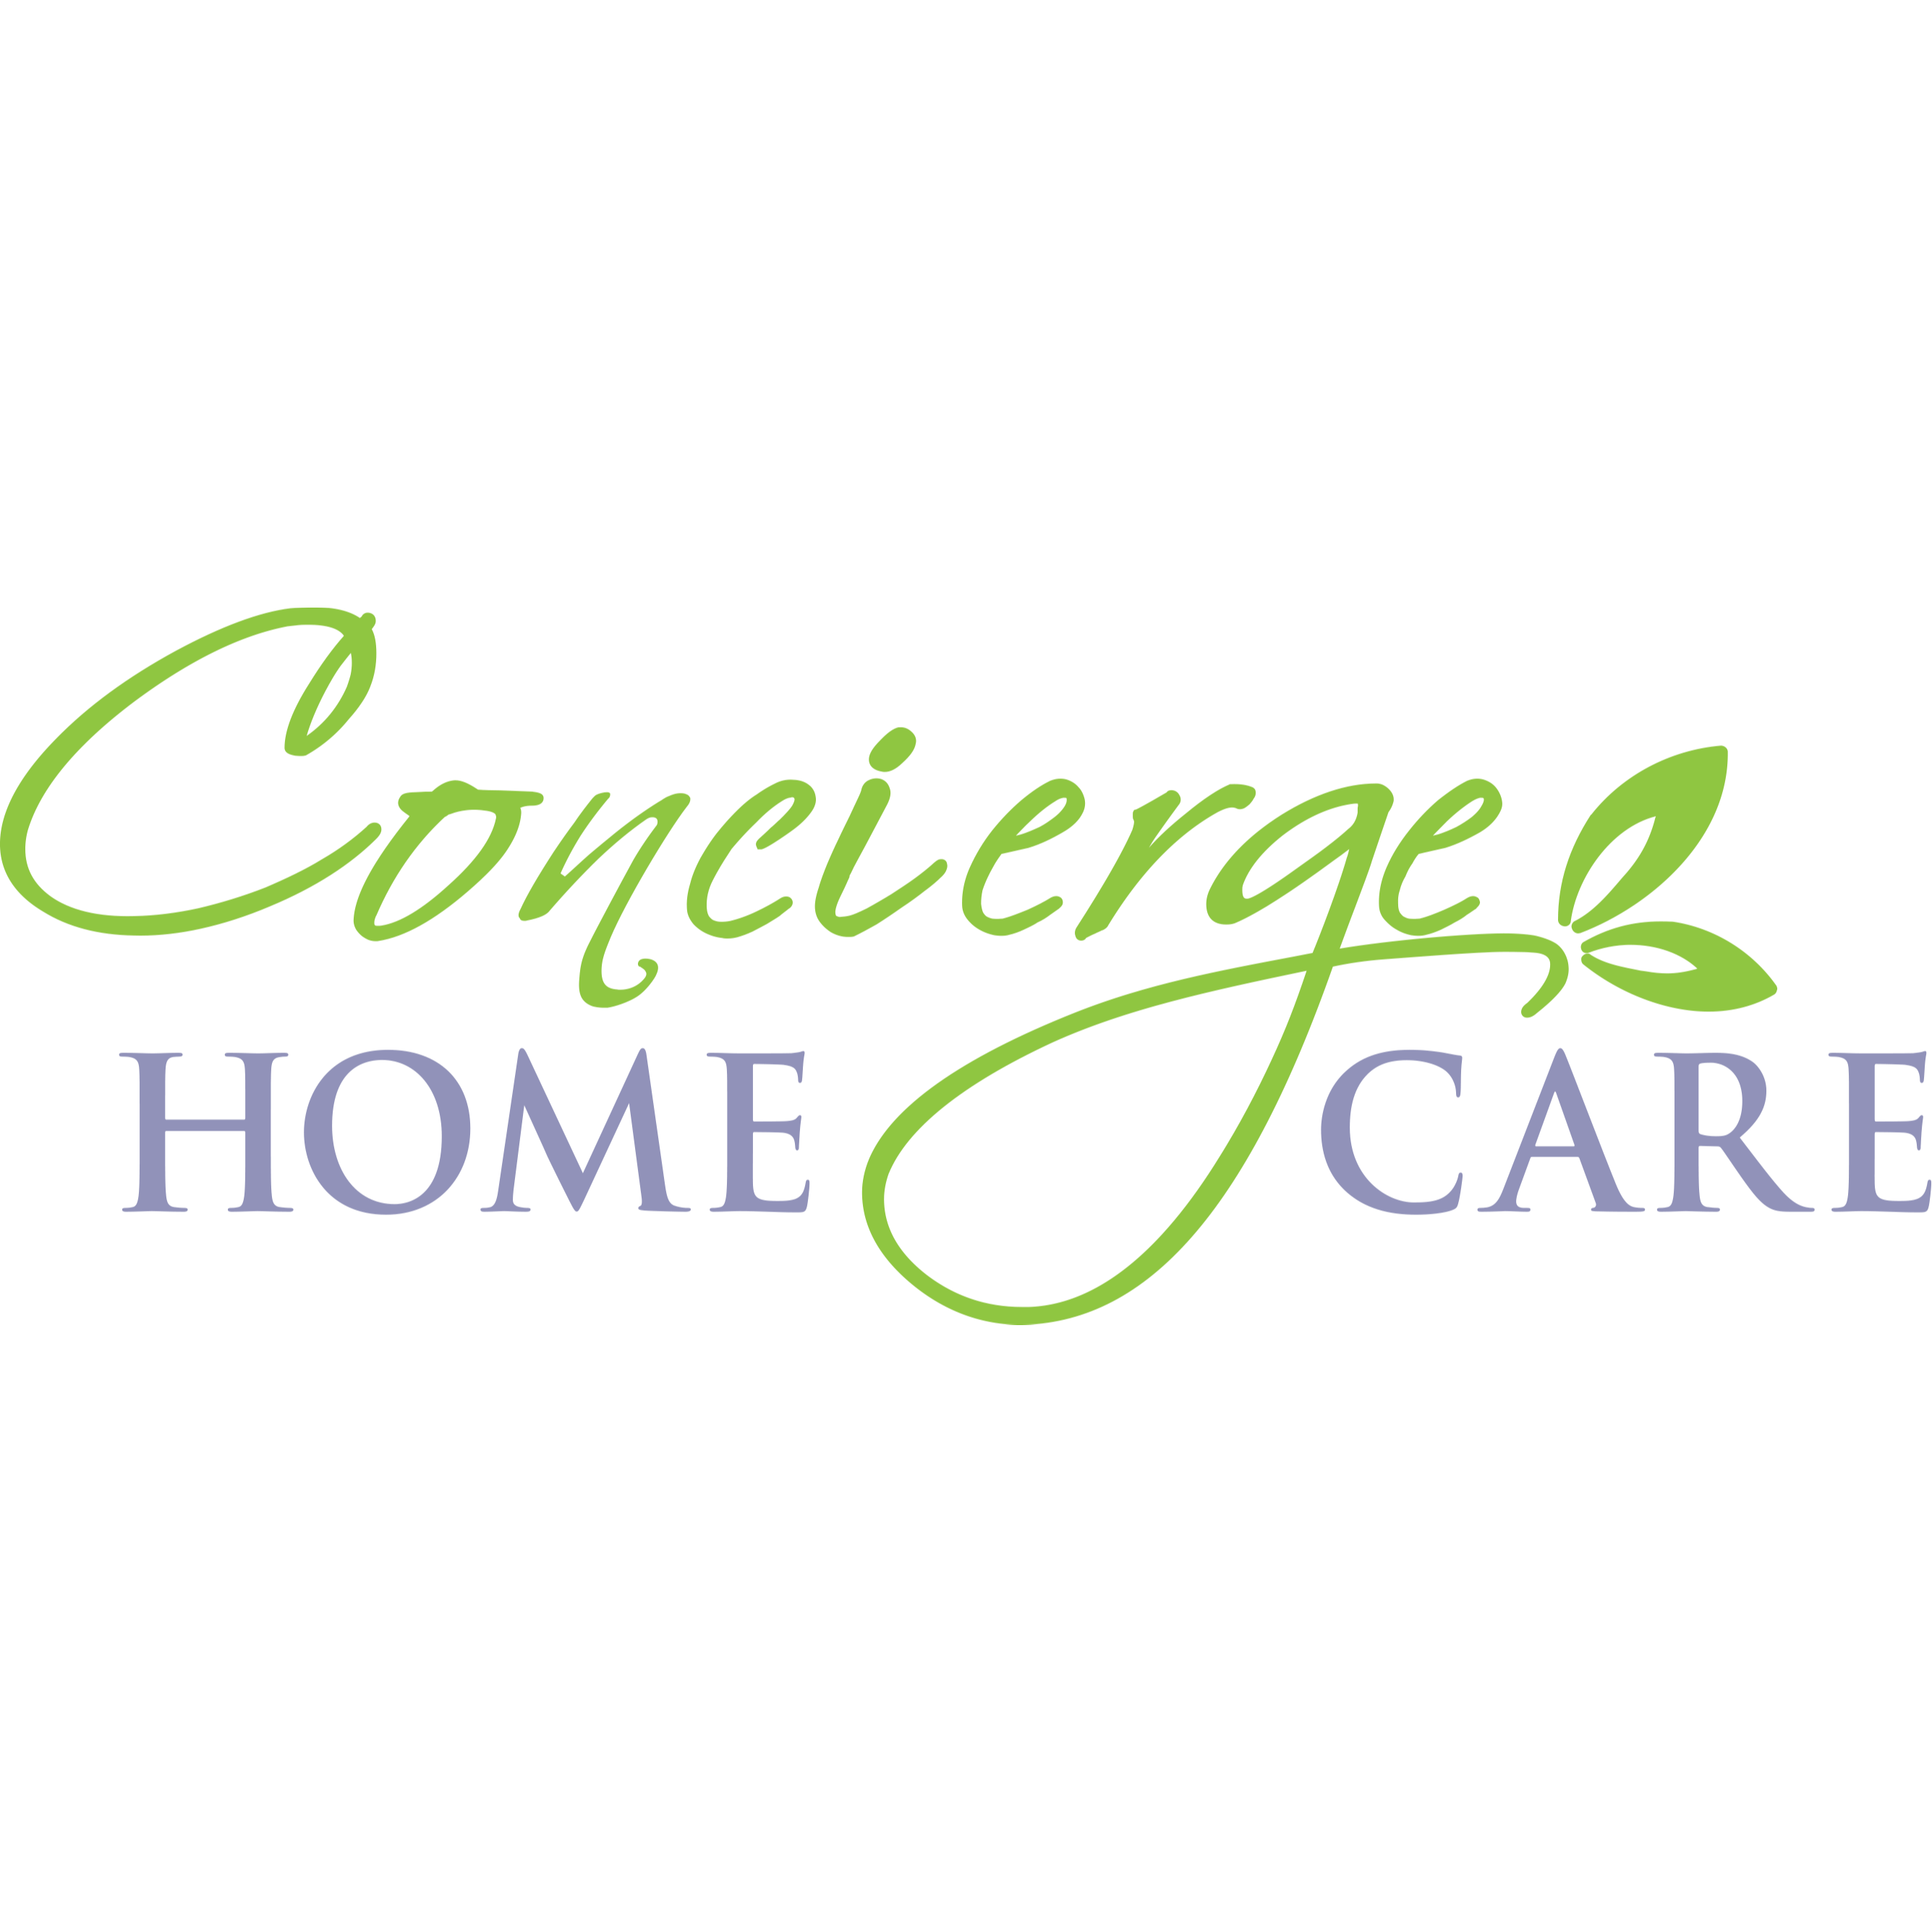 Concierge Home Care - Sarasota, FL 34238 - (941)342-9400 | ShowMeLocal.com